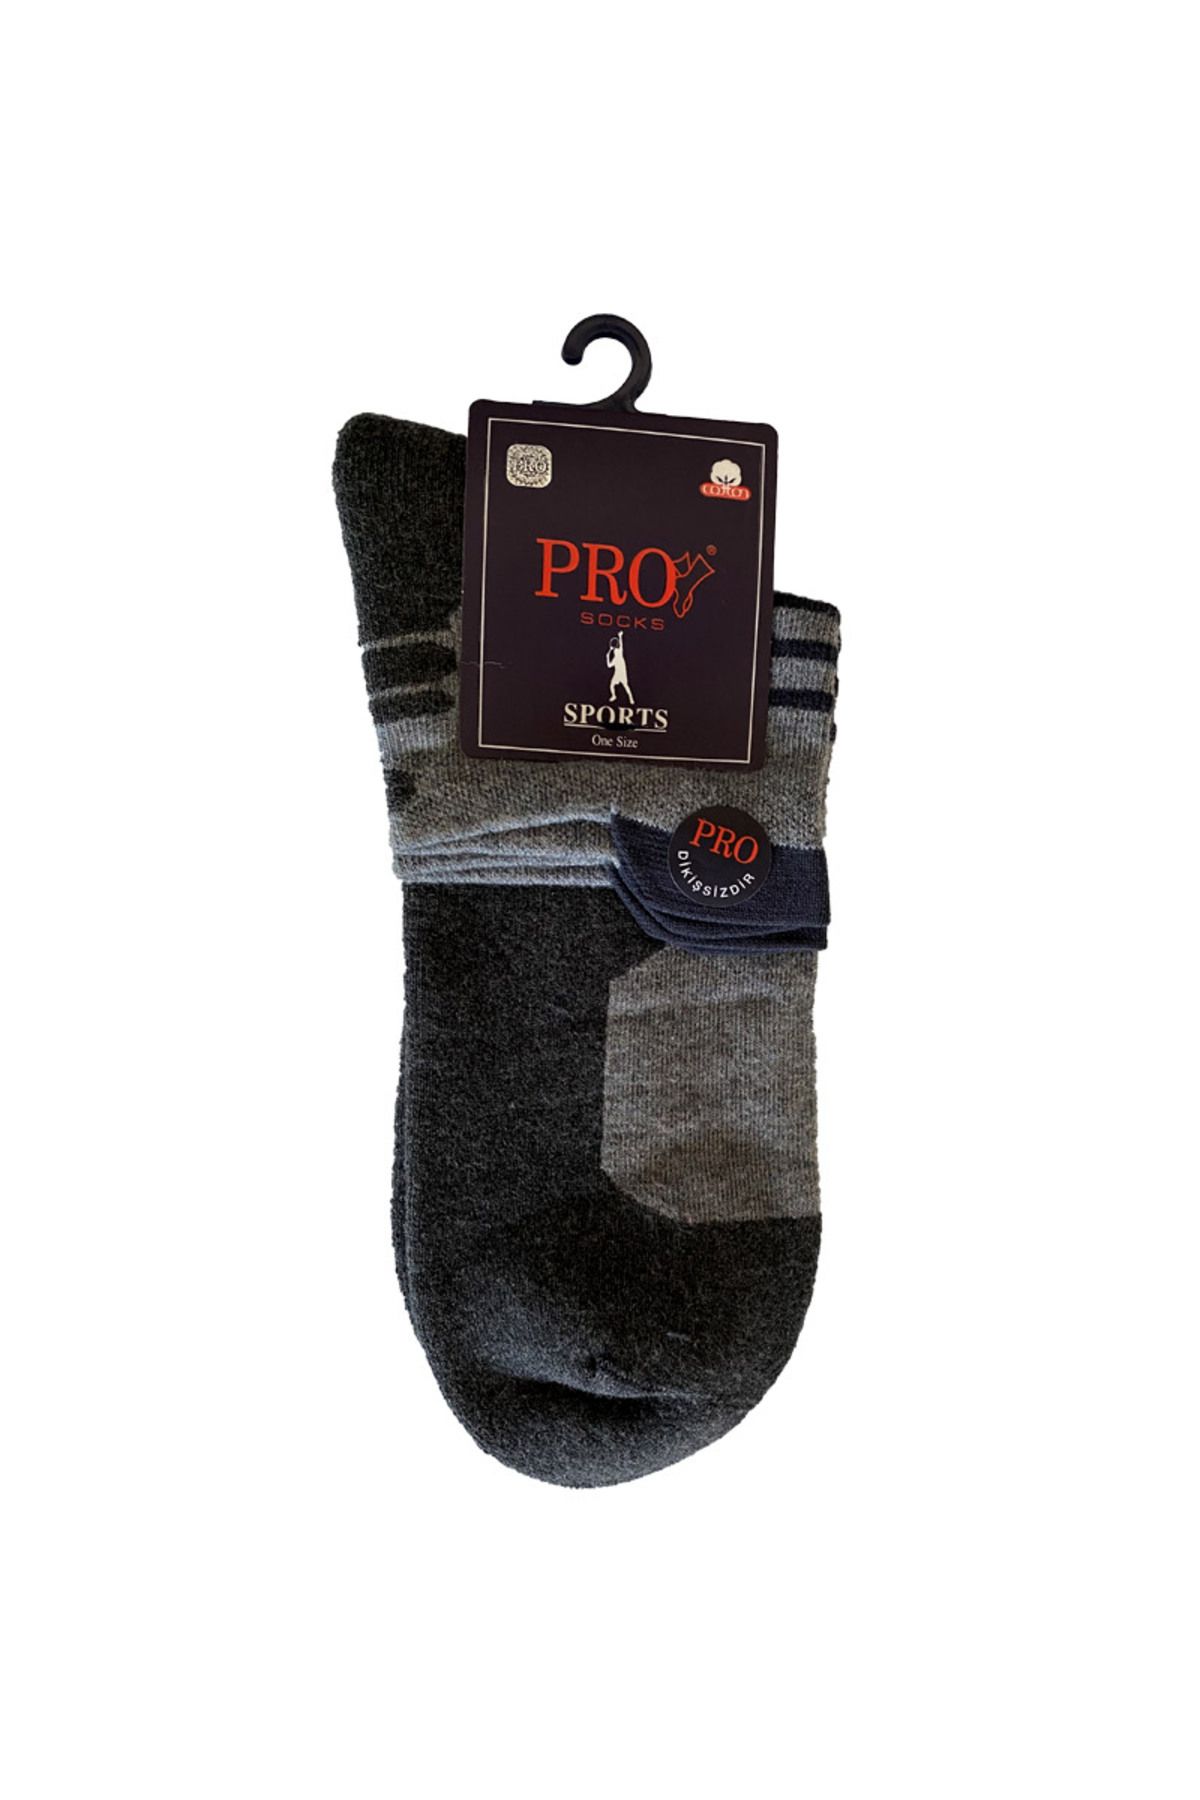 Genel Markalar Outdoor 14015 Dukha Havlu Erkek Patik Çorabı Antrasit 41-44